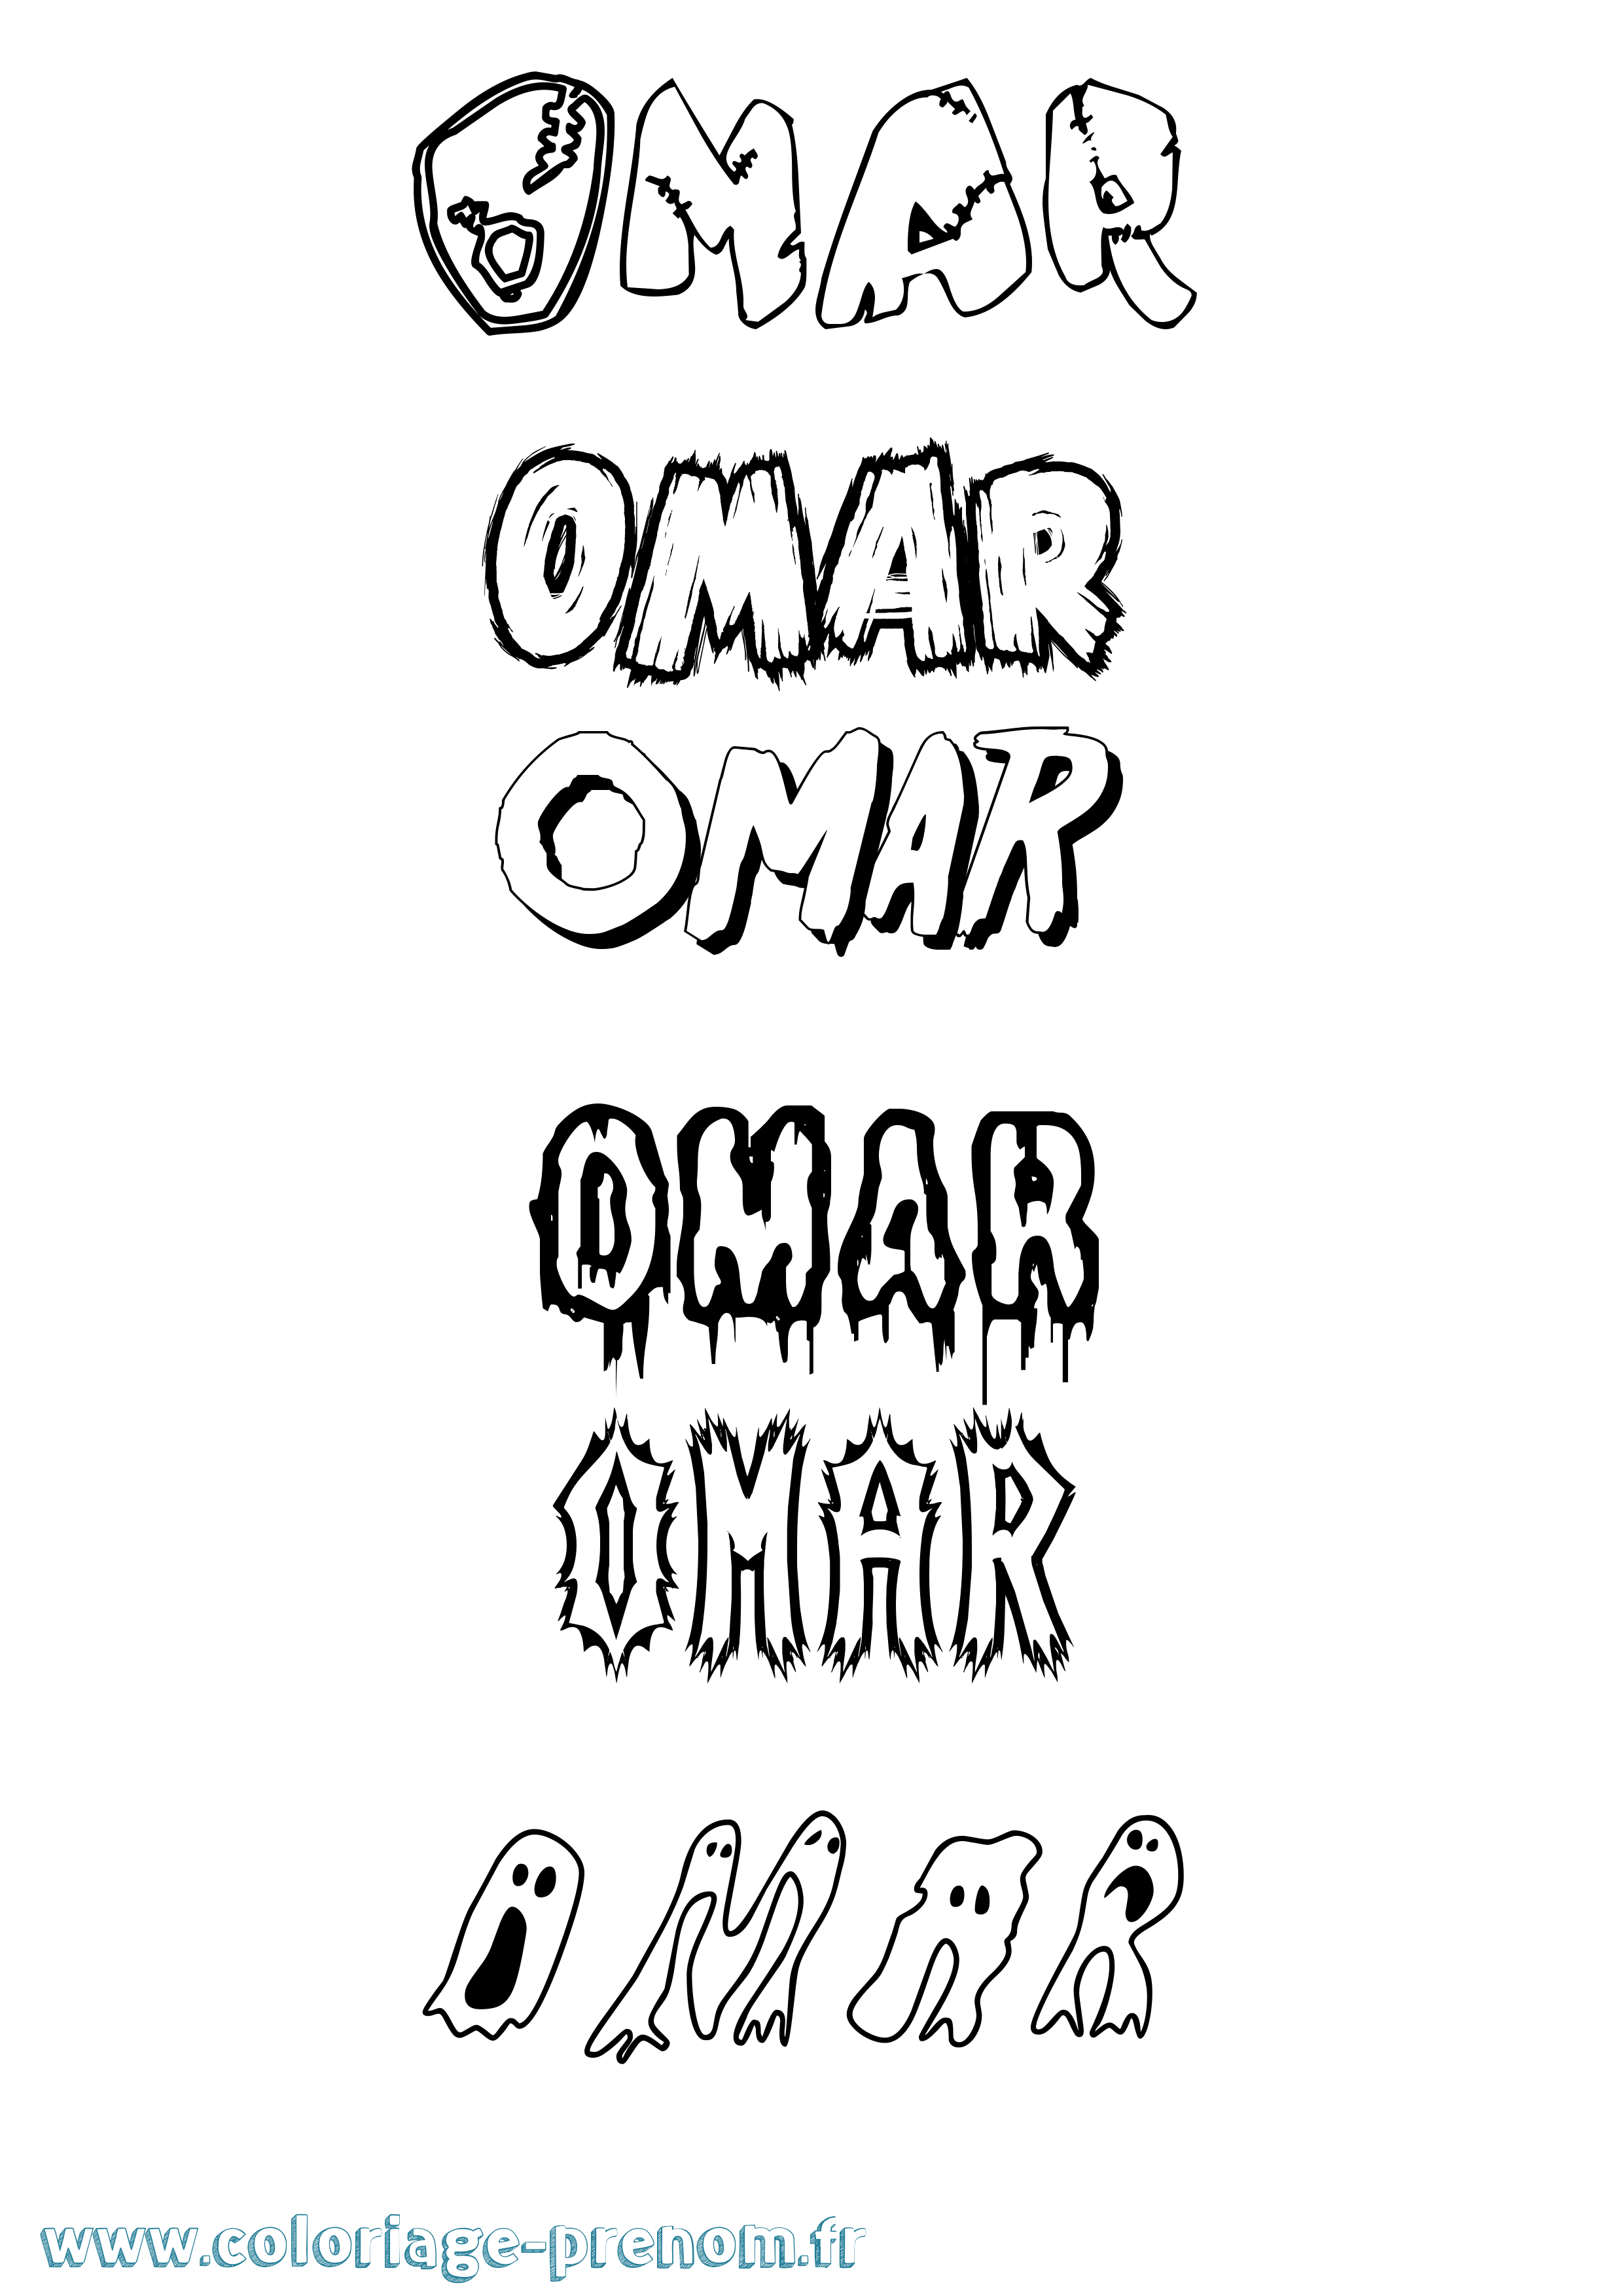 Coloriage prénom Omar Frisson